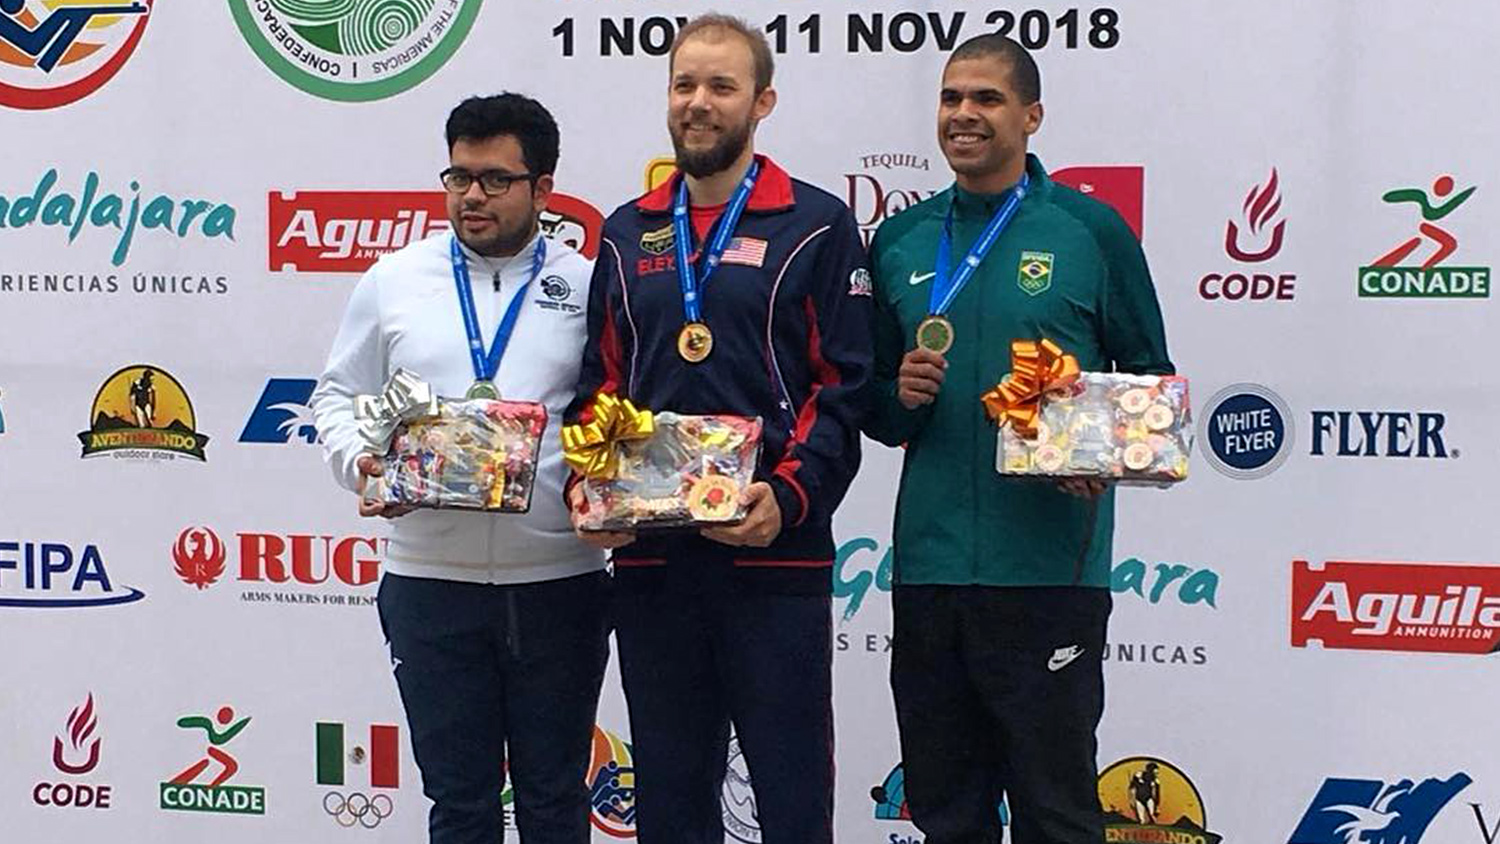 2018 Championship of the Americas | Men’s Air Pistol podium